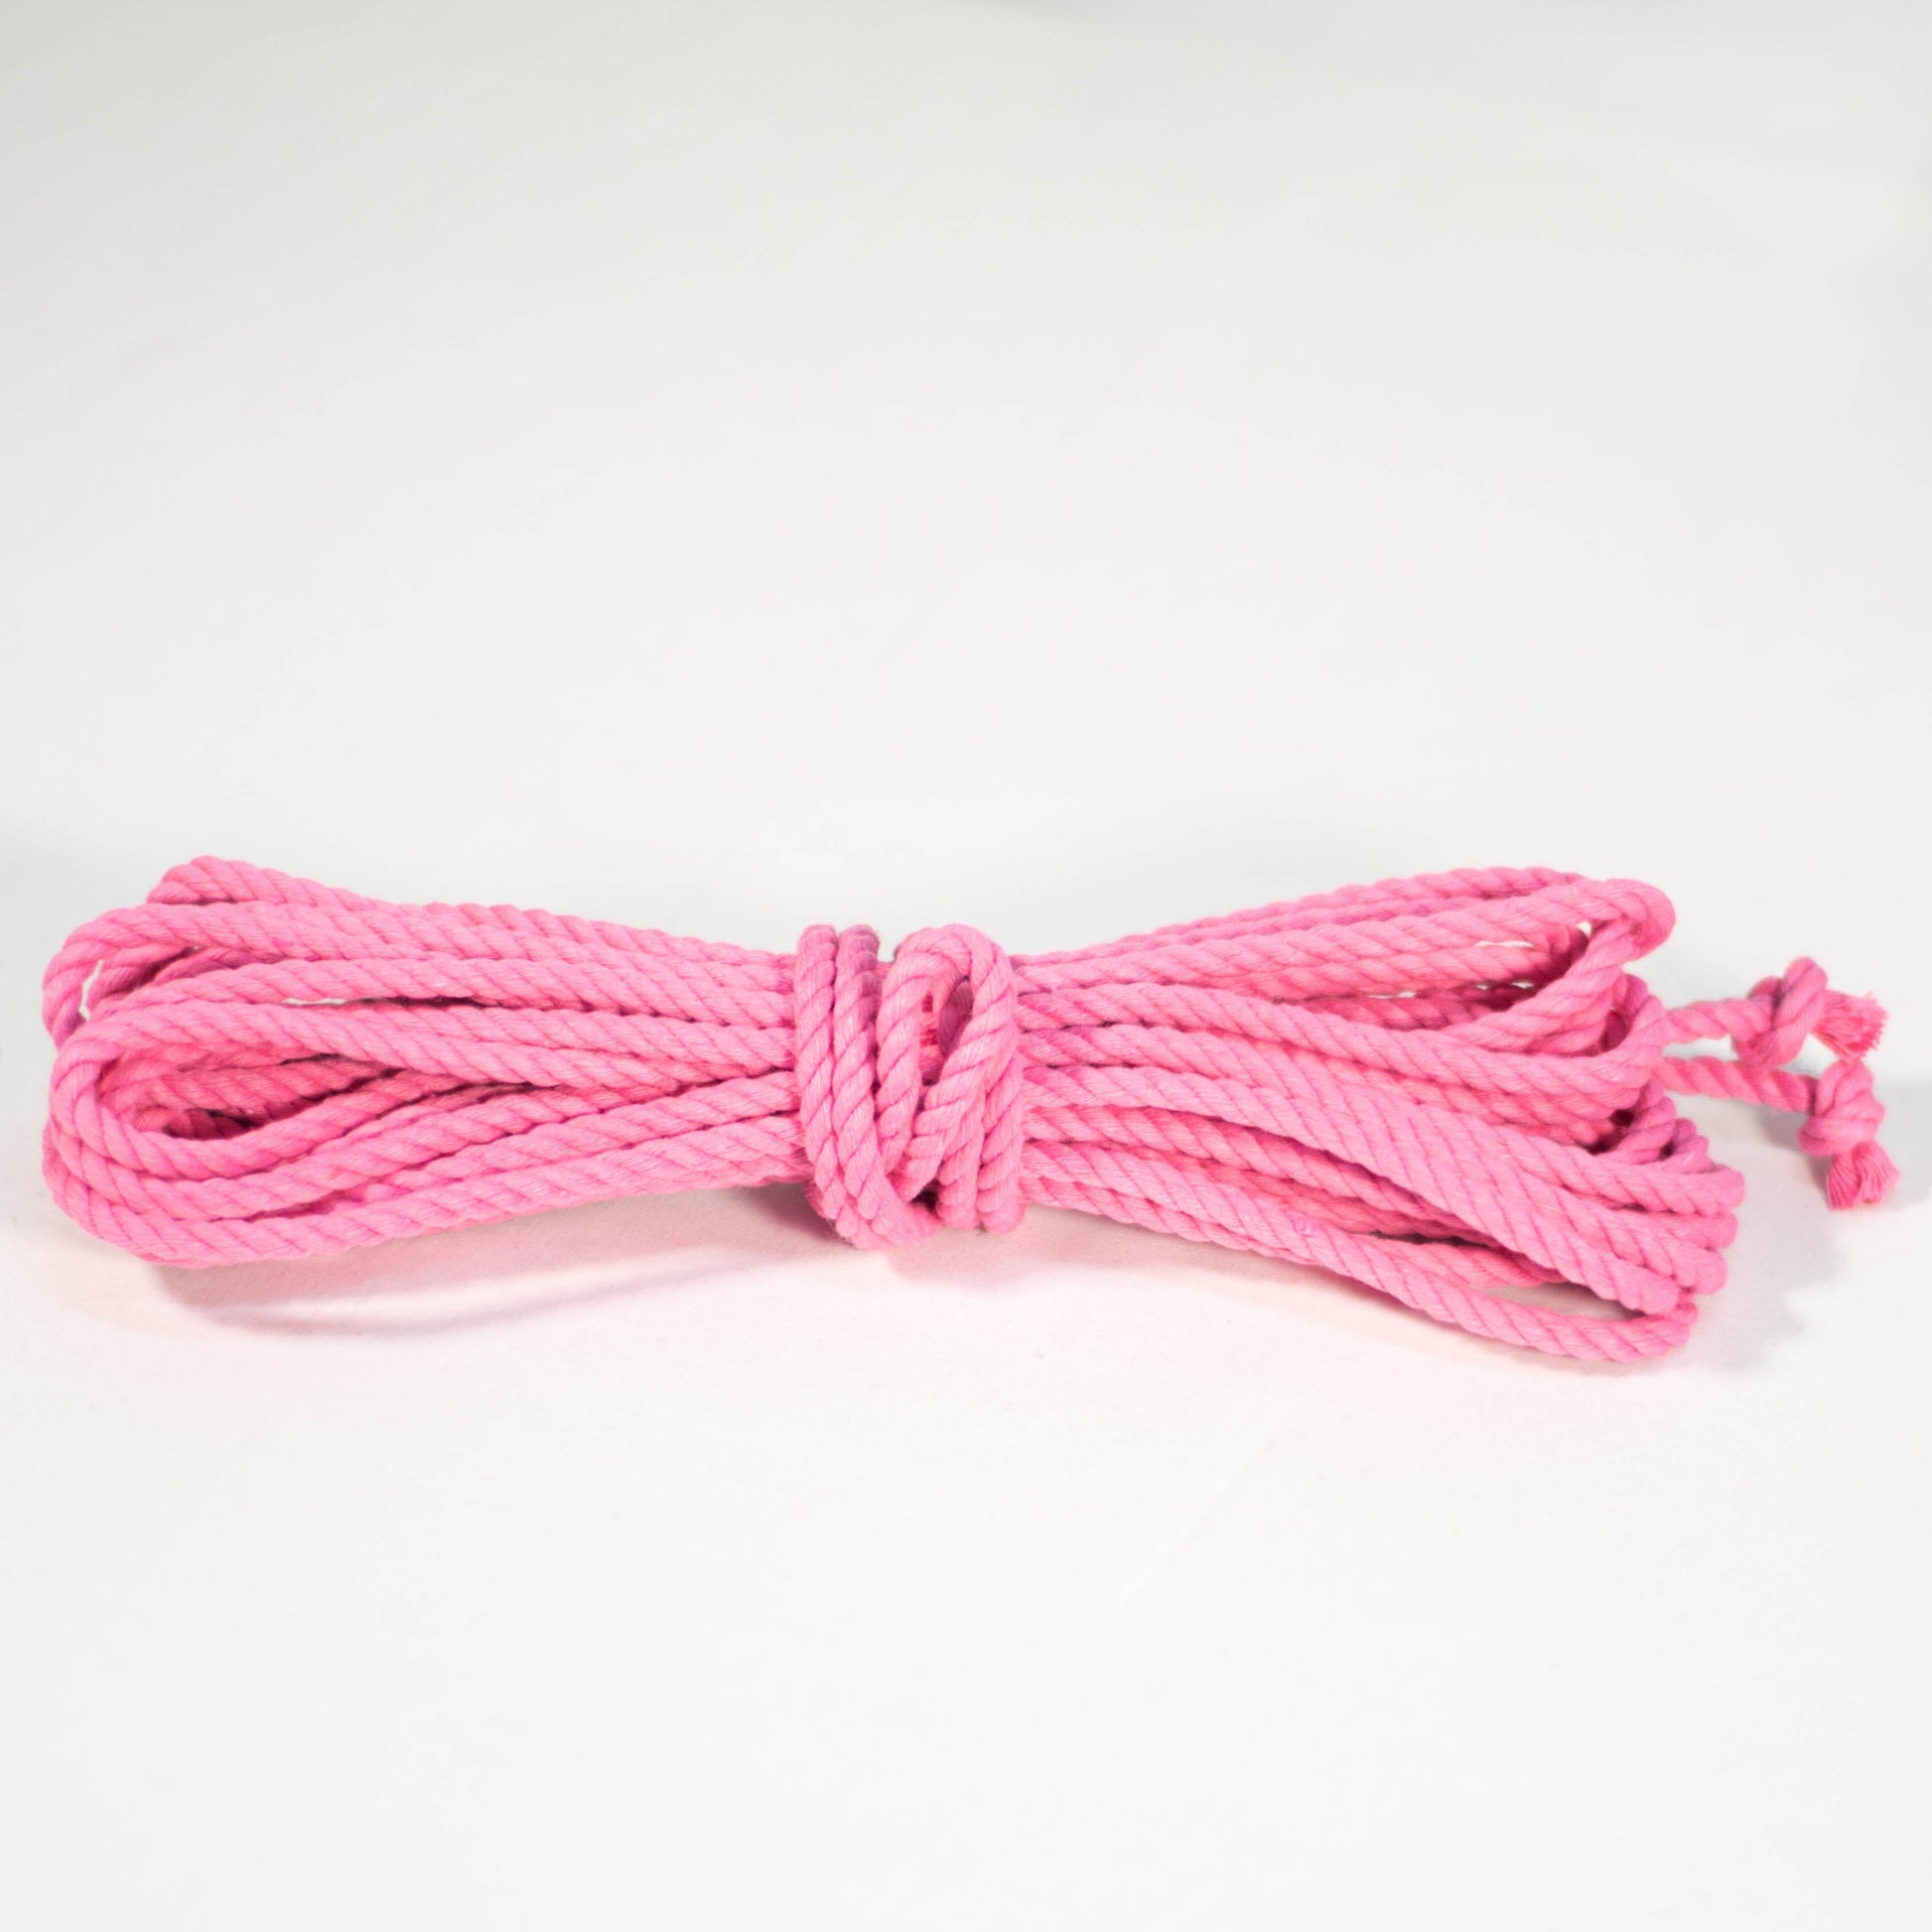 Cotton Play Ropes Shibari Rope Pink Single length 